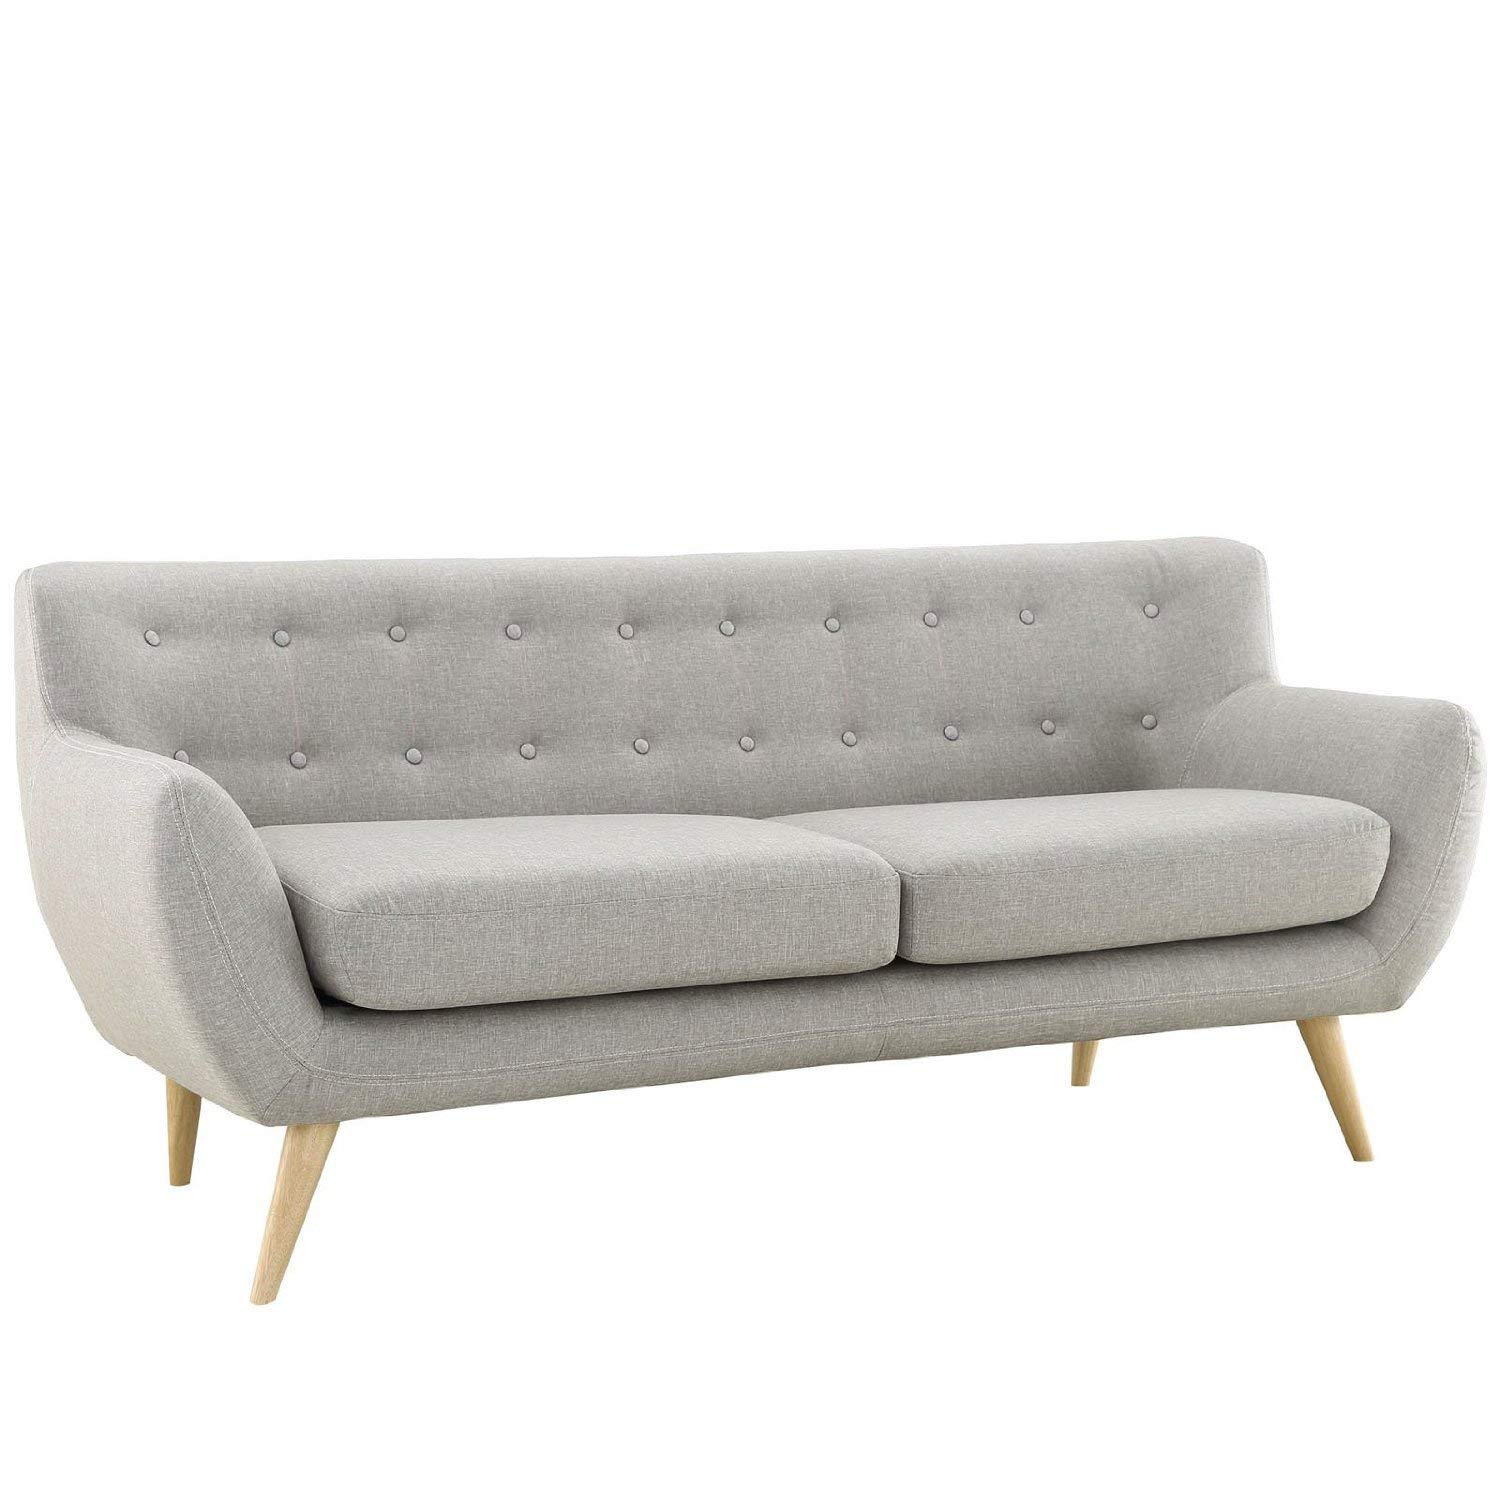 love sofa amazon.com: divano roma furniture modern style sofa / love seat, 2 seater - VJOSQZH